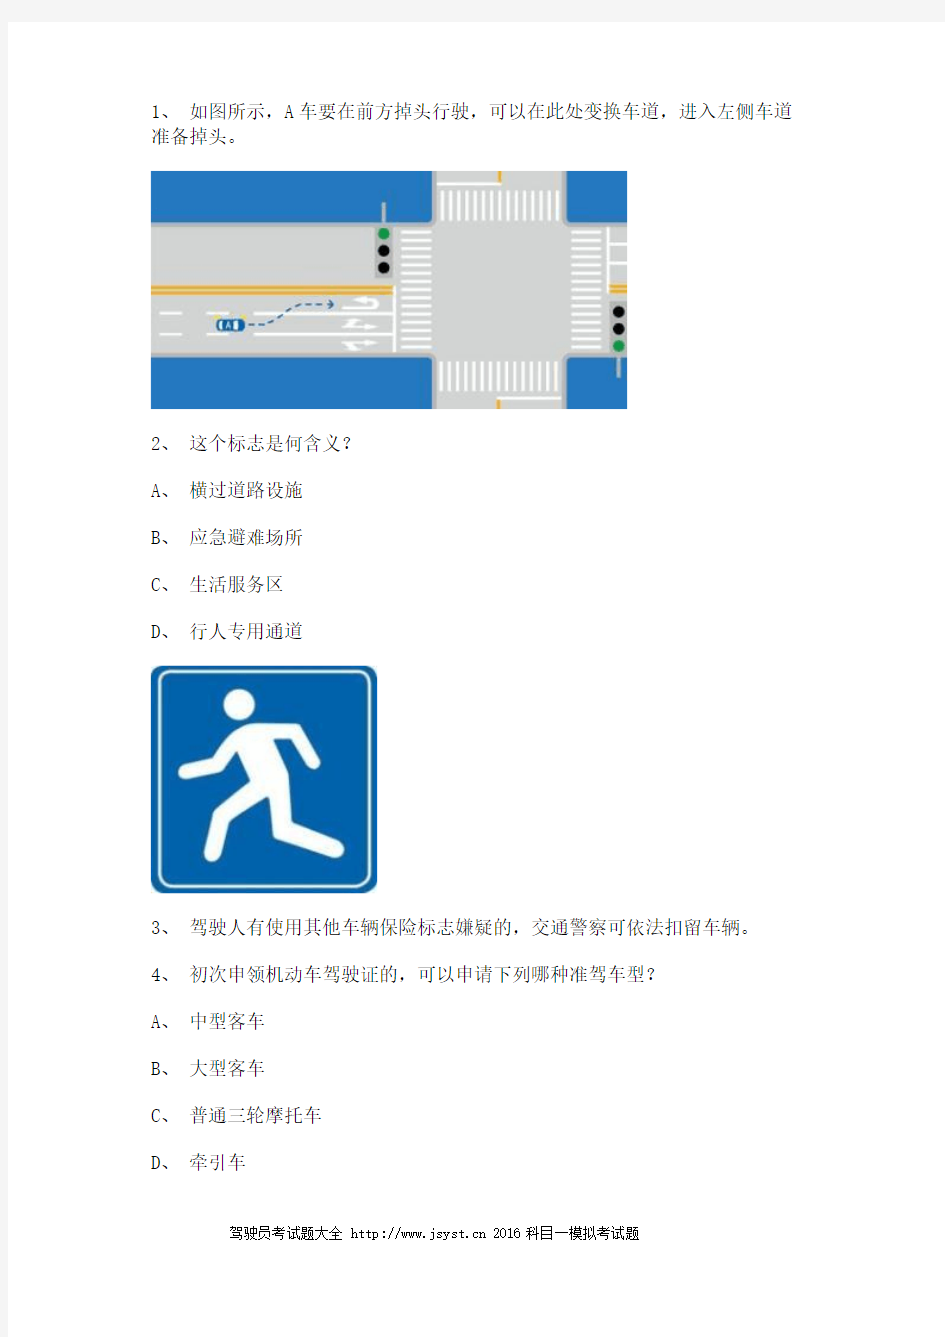 2011晋江市交通规则考试c2自动档小车试题